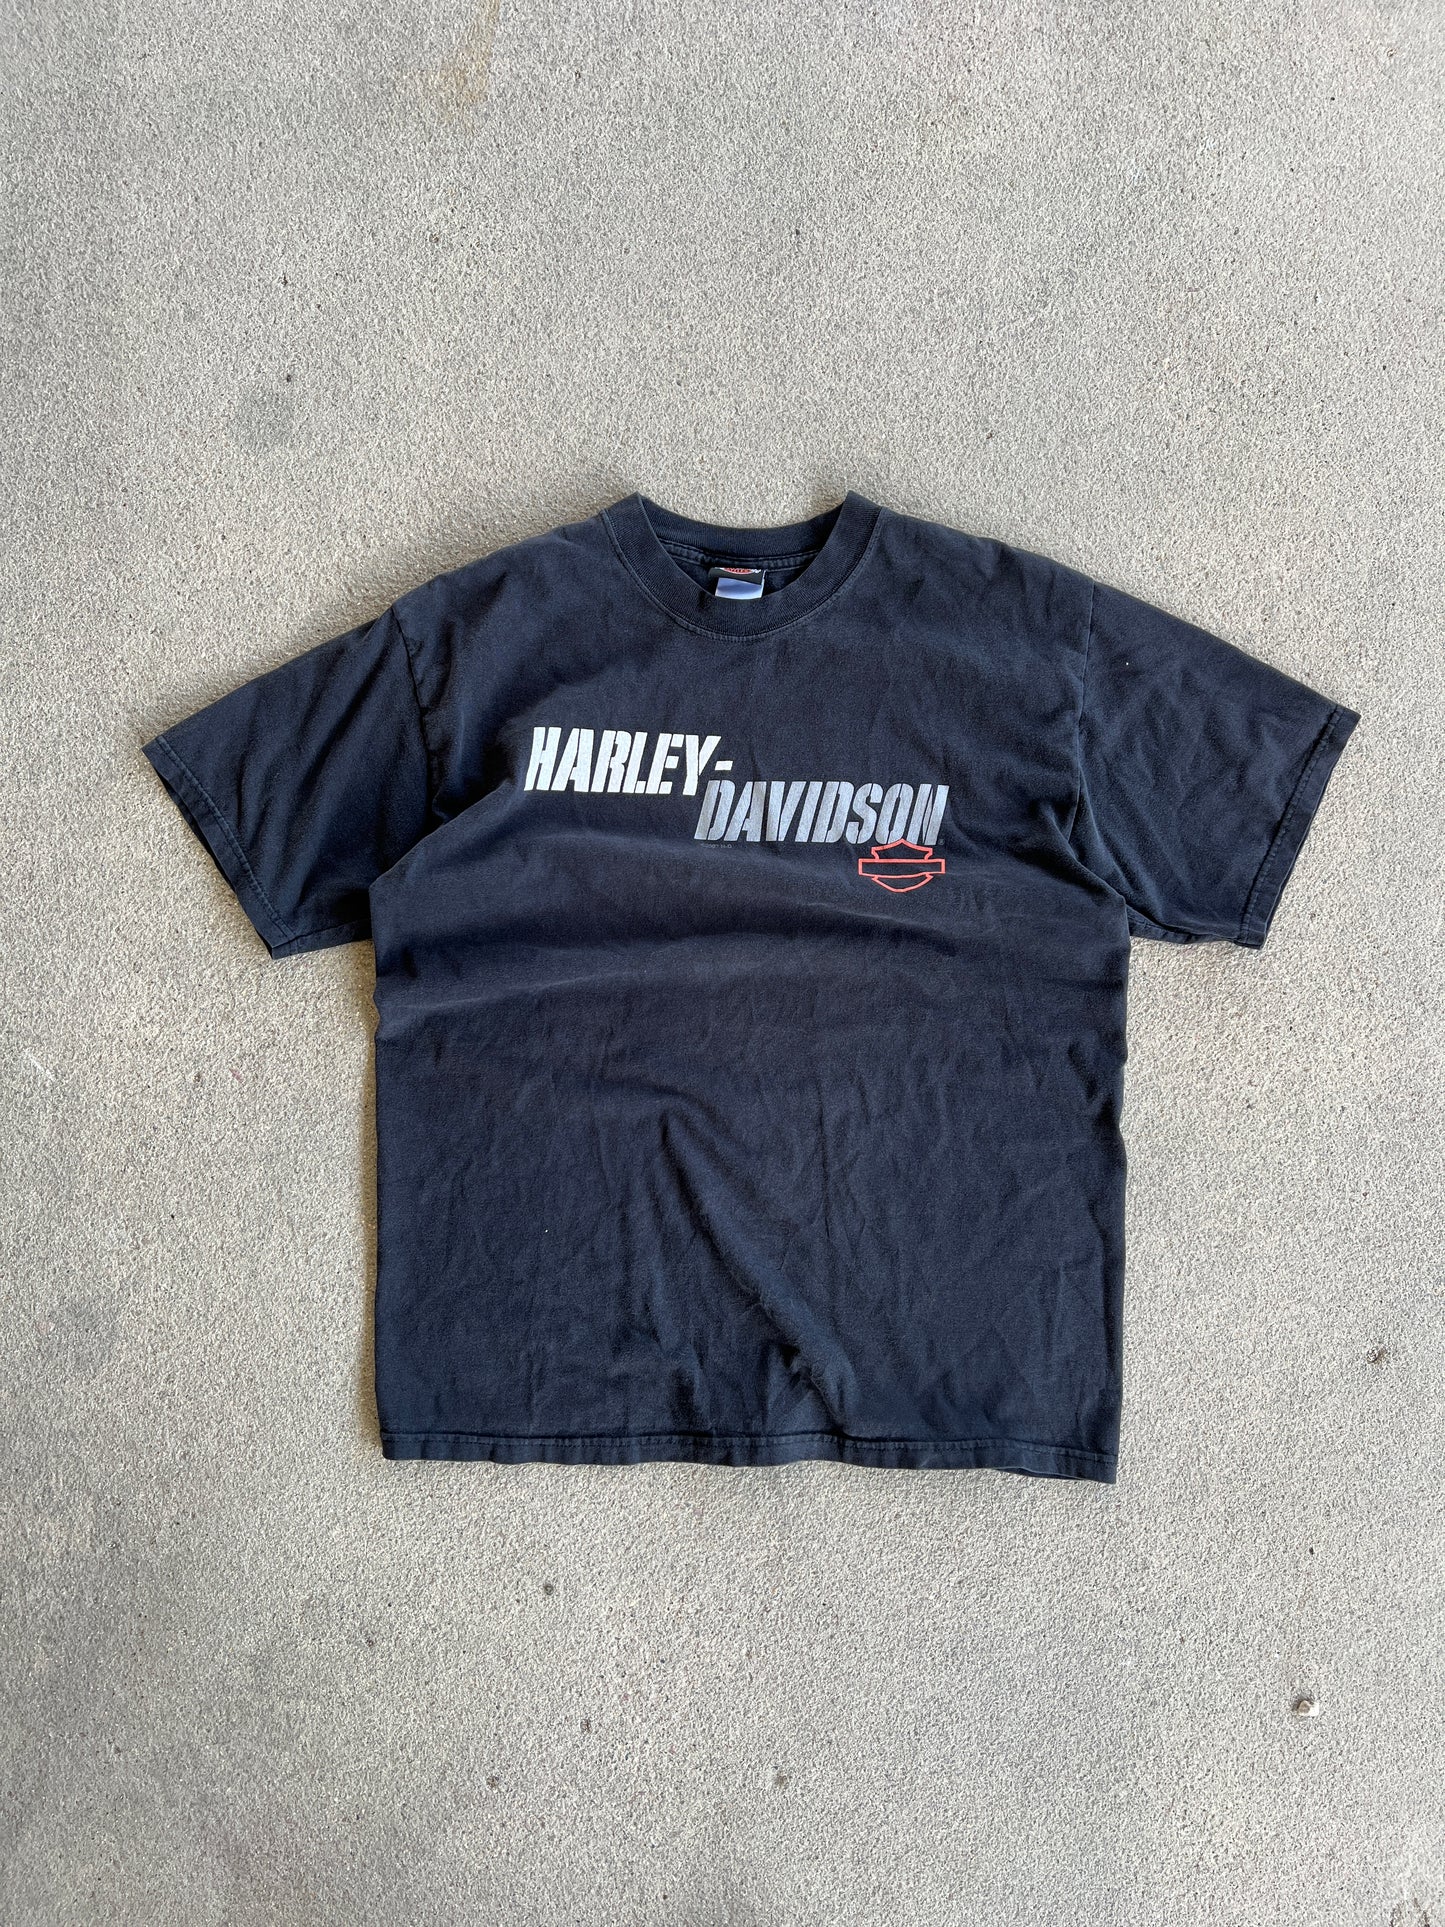 Vintage Black Harley Davidson Shirt - L